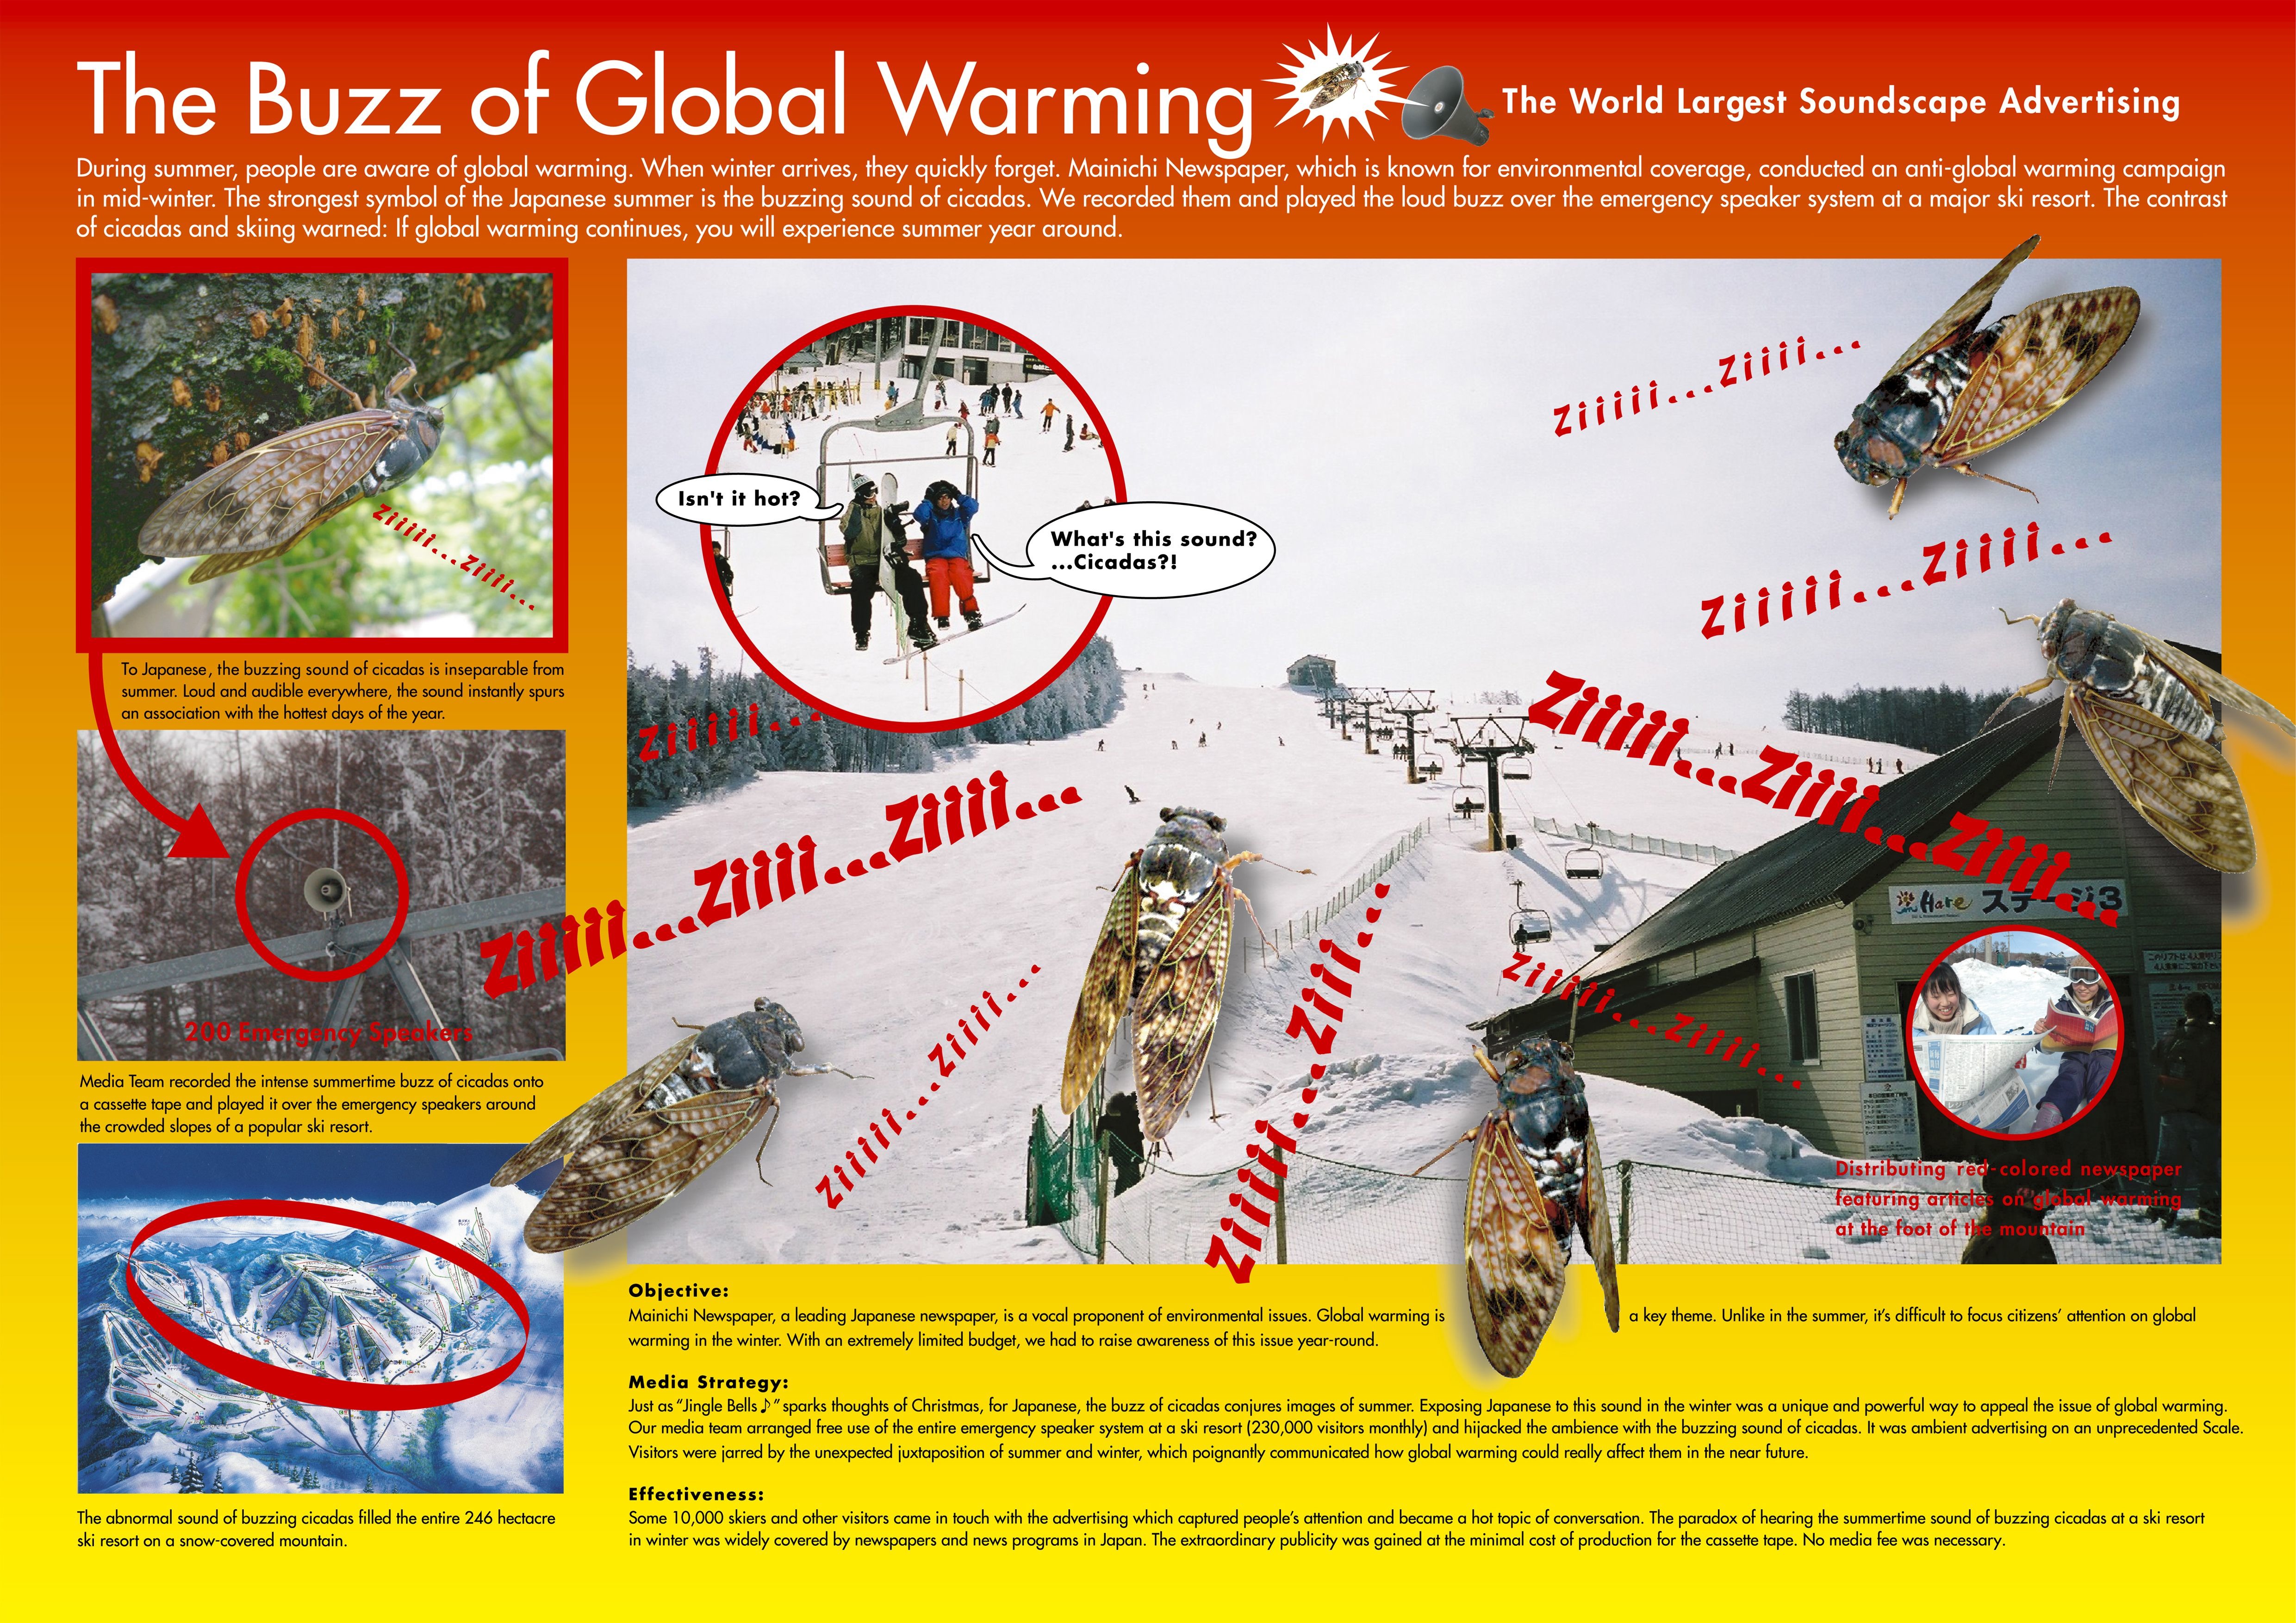 GLOBAL WARMING AWARENESS